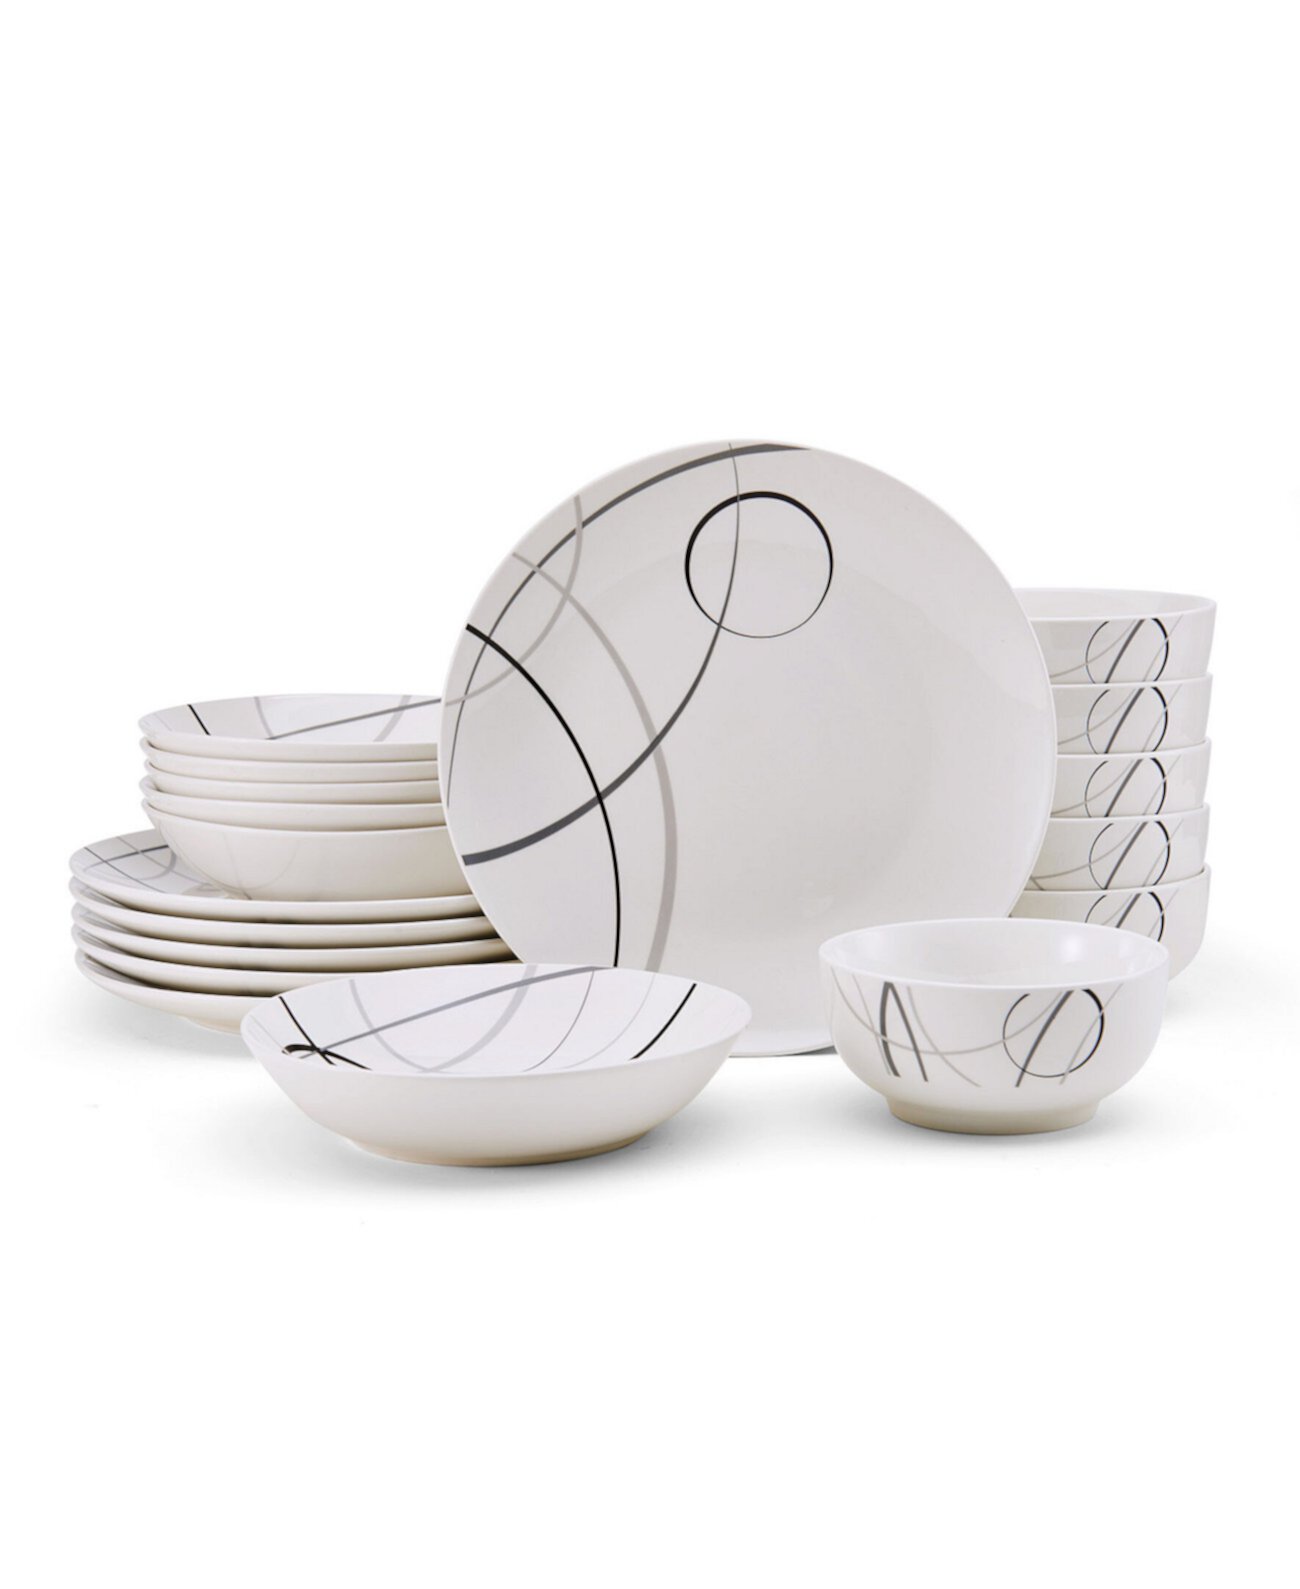 Набор столовой посуды Circles, 18 предметов, сервиз на 6 персон Studio Nova